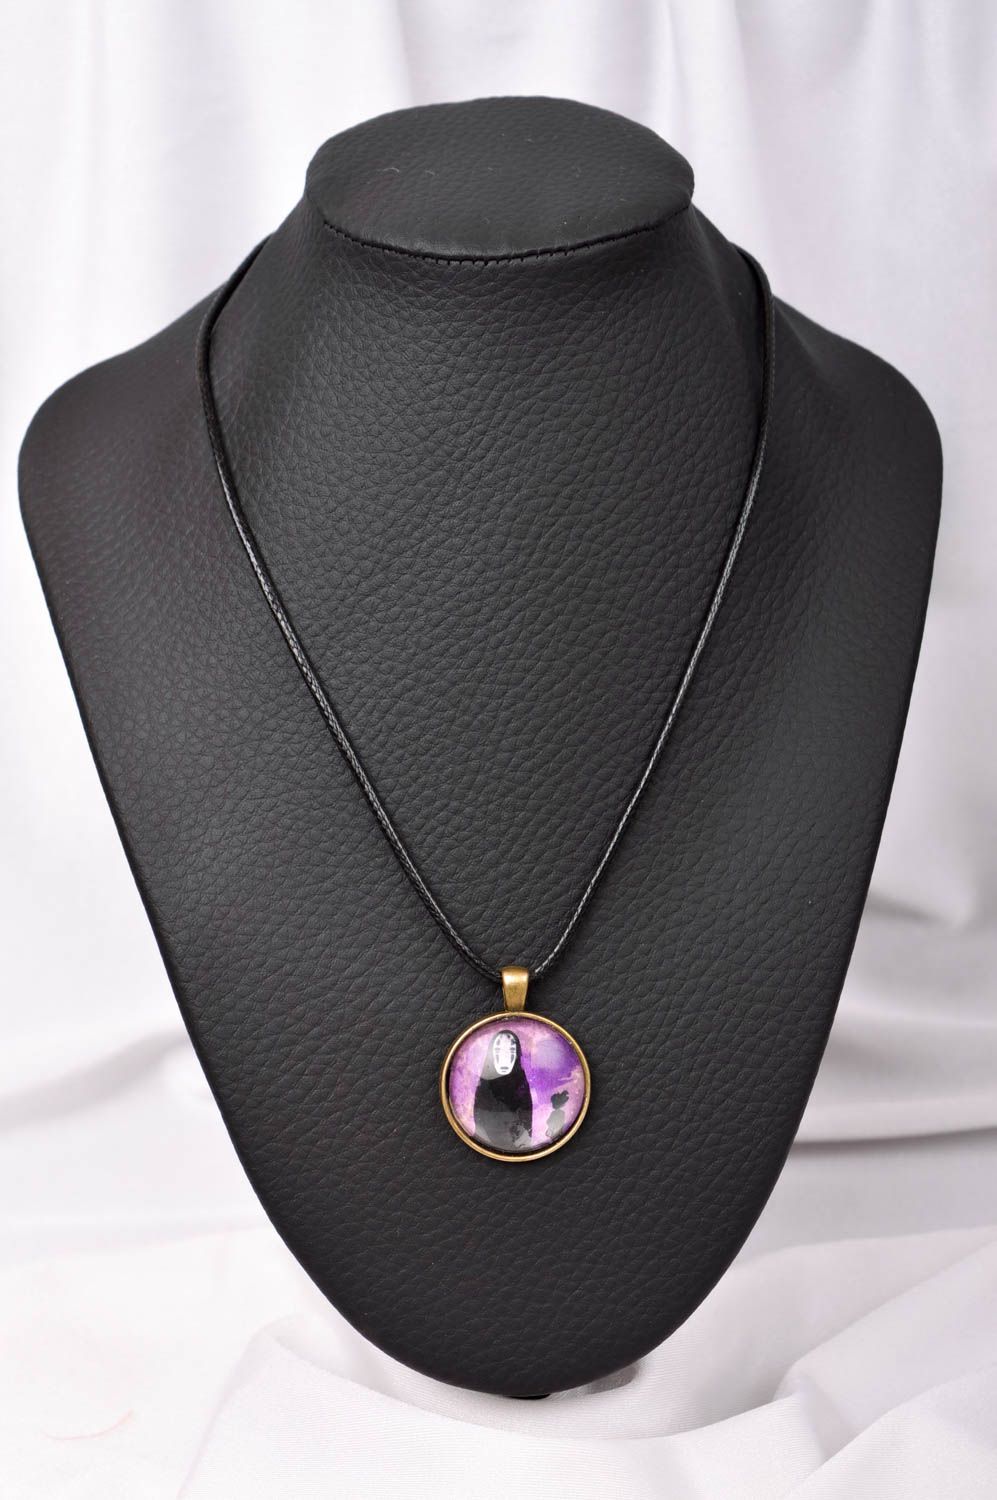 Handmade pendant on cord designer accessories for women glass pendant for girls photo 1